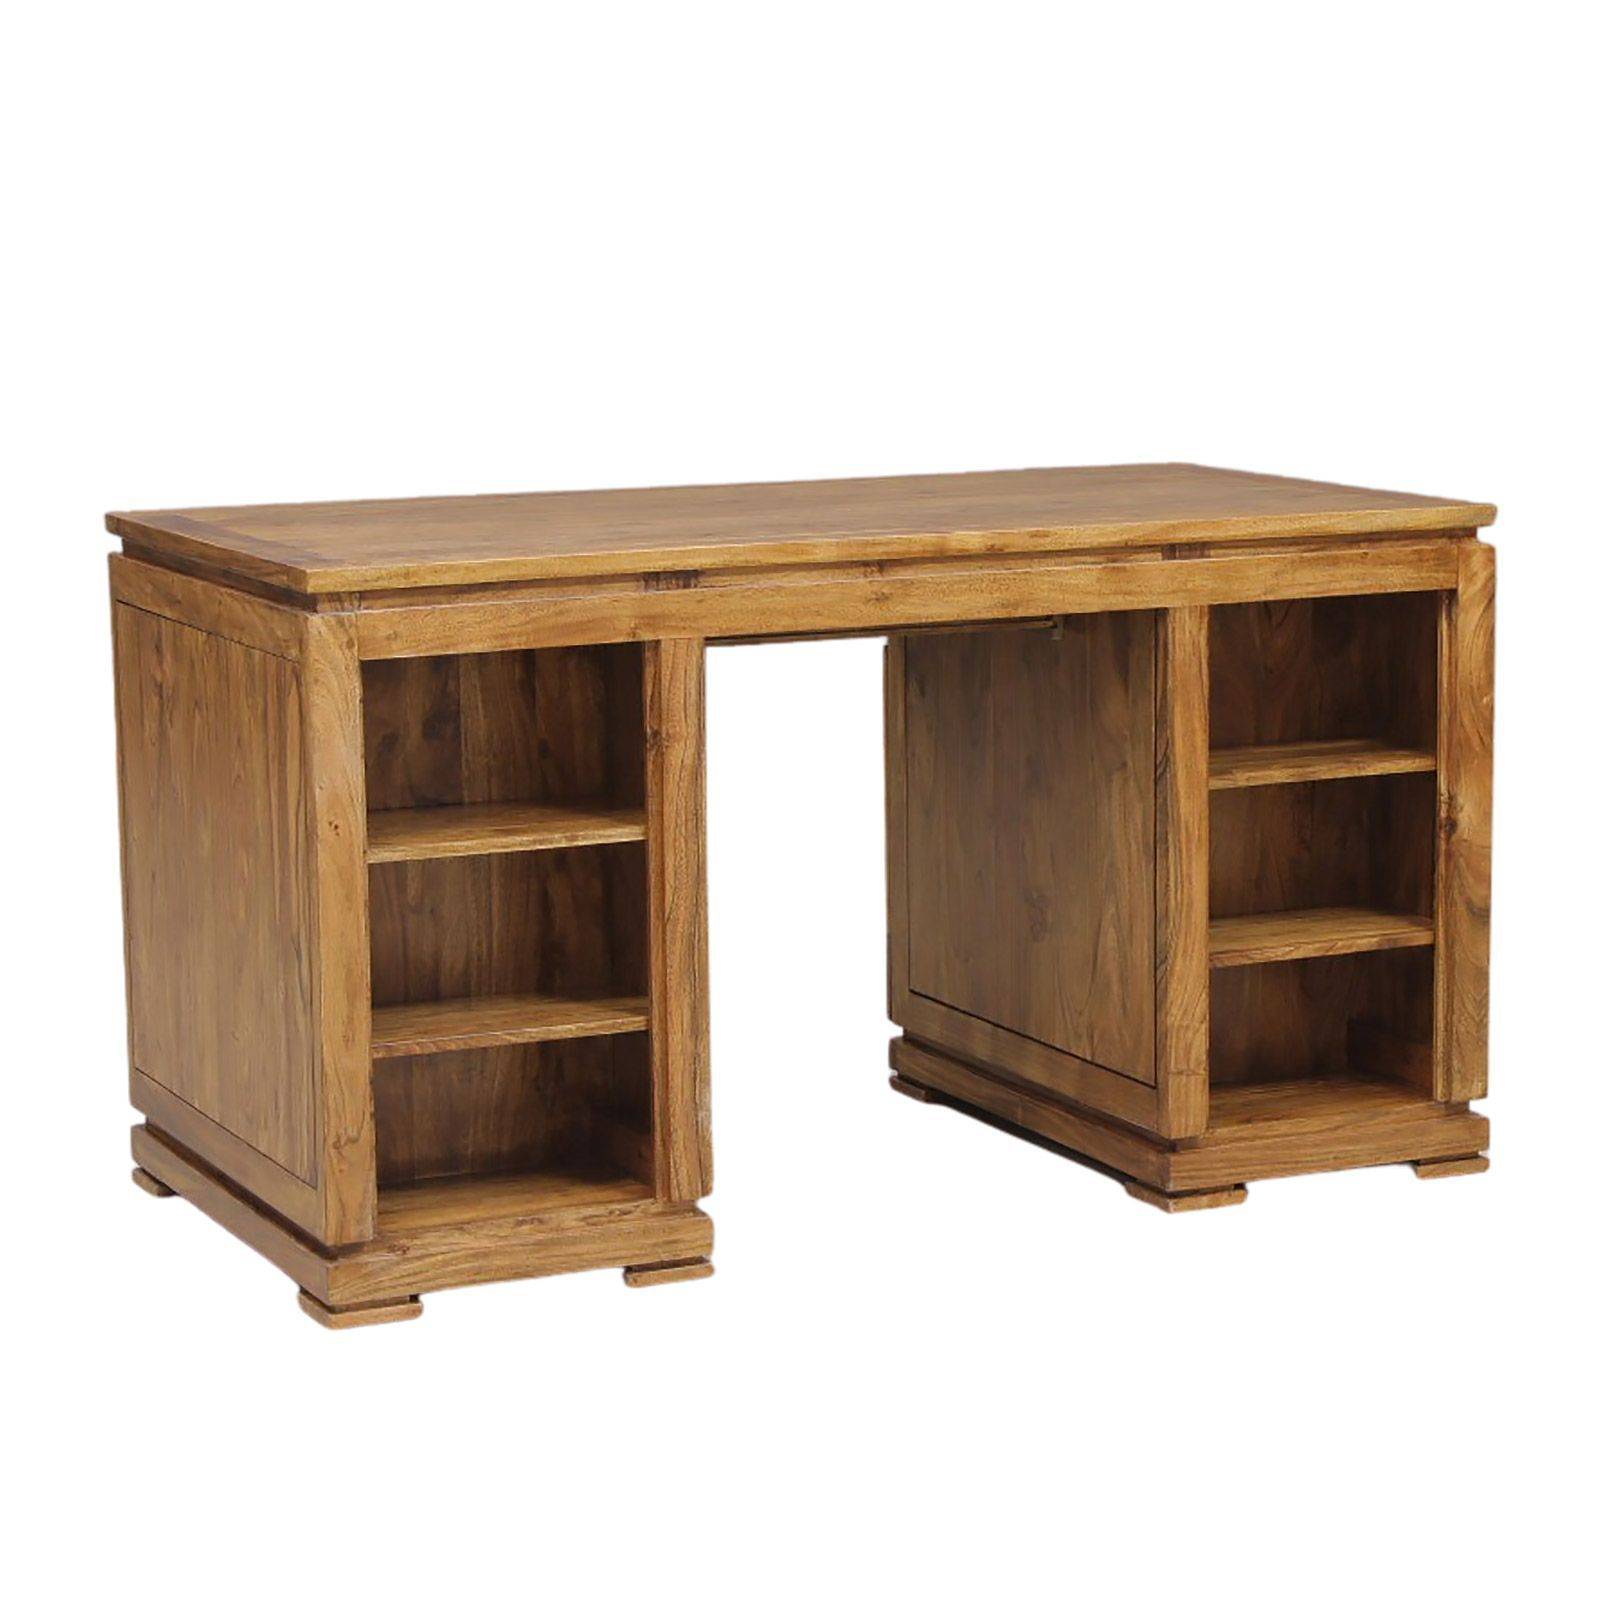 Le bureau double, meuble en bois massif - Anders Paris